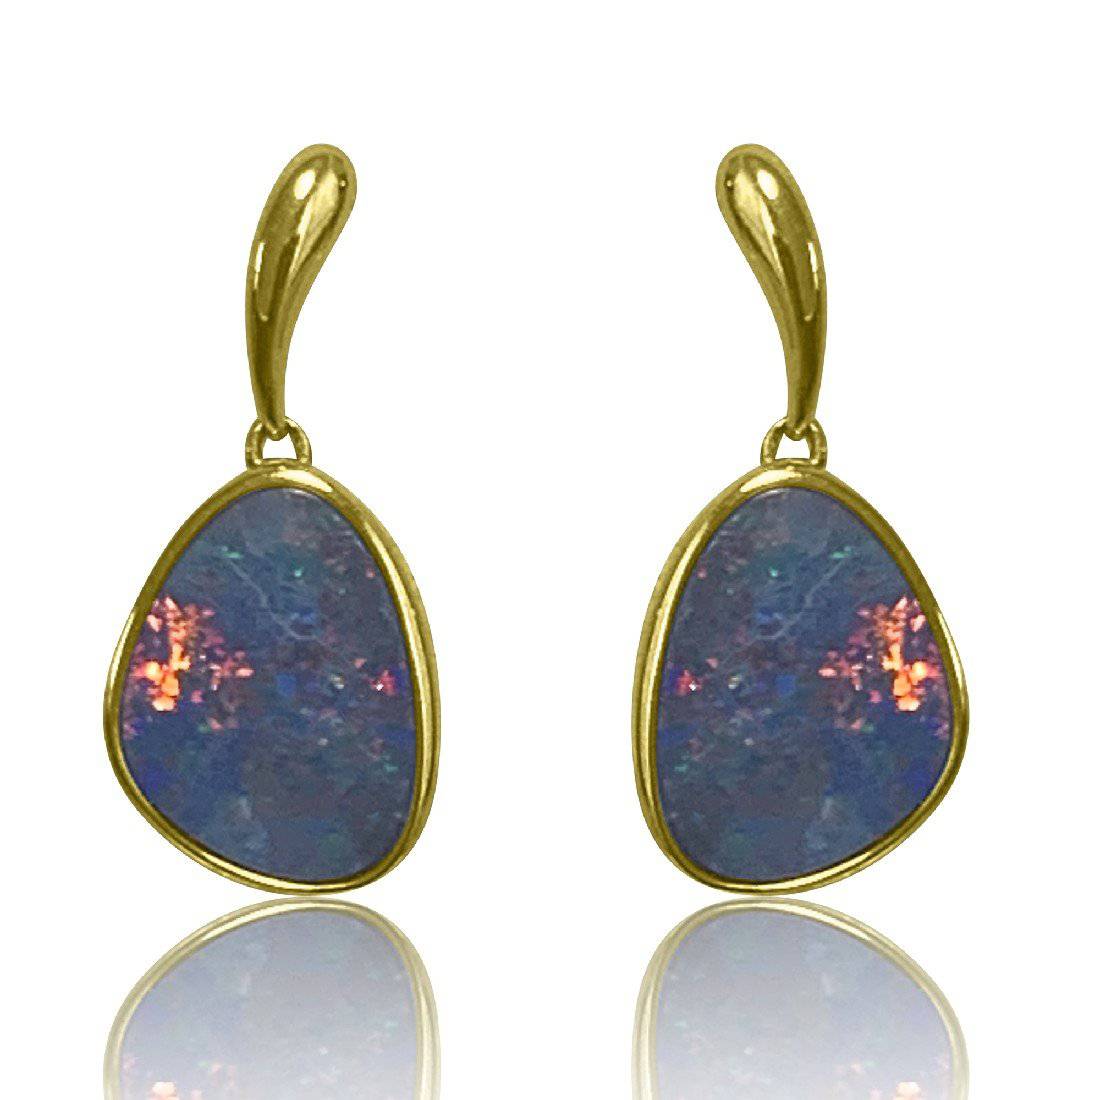 14kt Rose Gold Opal dangling earrings - Masterpiece Jewellery Opal & Gems Sydney Australia | Online Shop